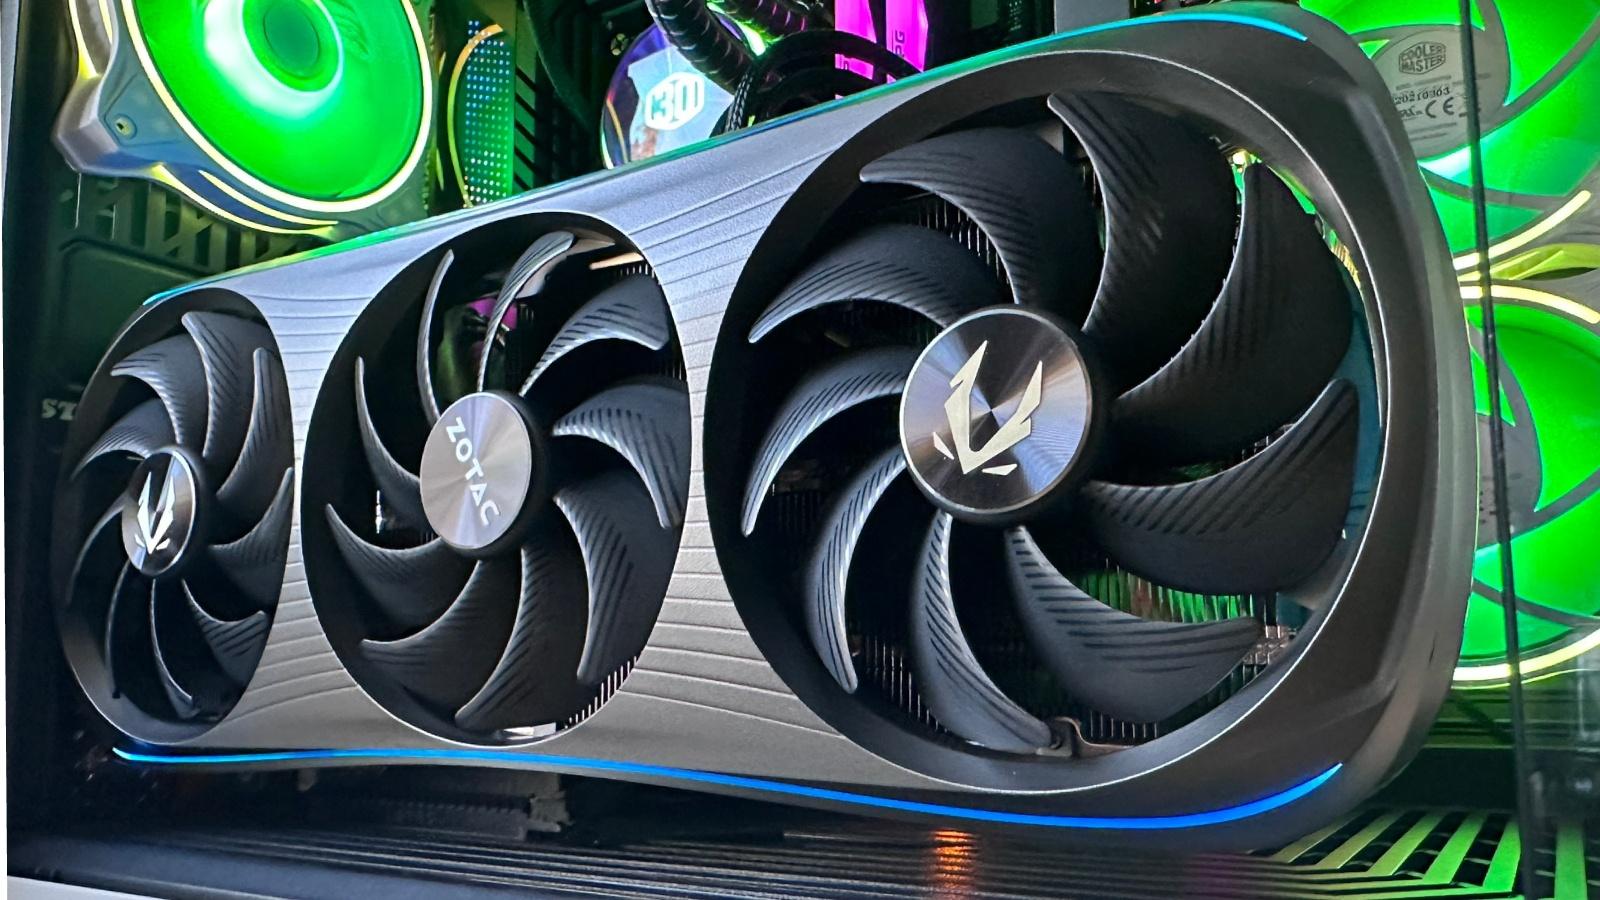 New Nvidia GeForce RTX 4070 Ti Super guide